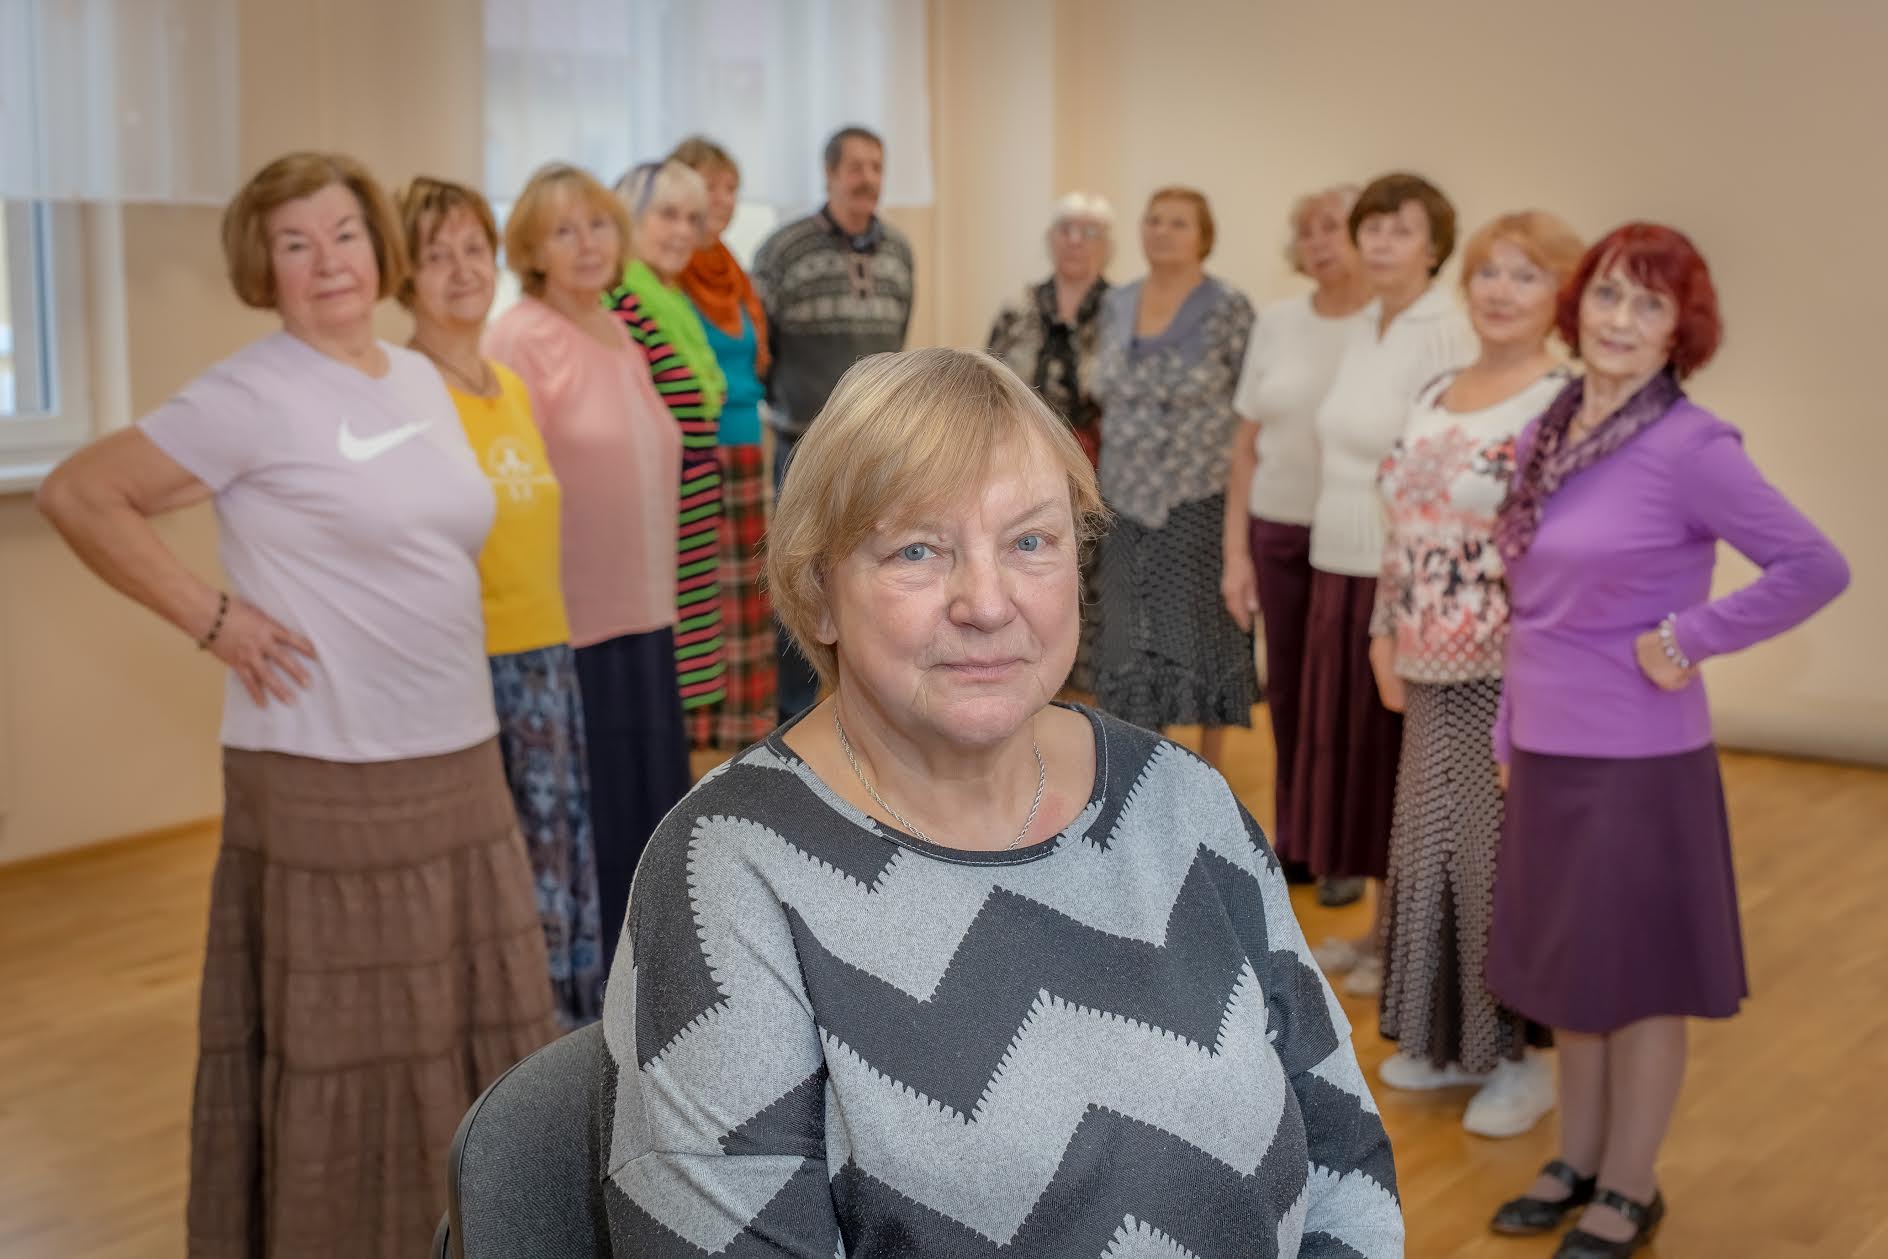 Alates aprillist Võru pensionäride päevakeskuse tegemisi juhatama asunud Siiri Toomik (67) ootab töise aastaringi täitumist, et end kõigega veel paremini kurssi viia. Foto: Aigar Nagel